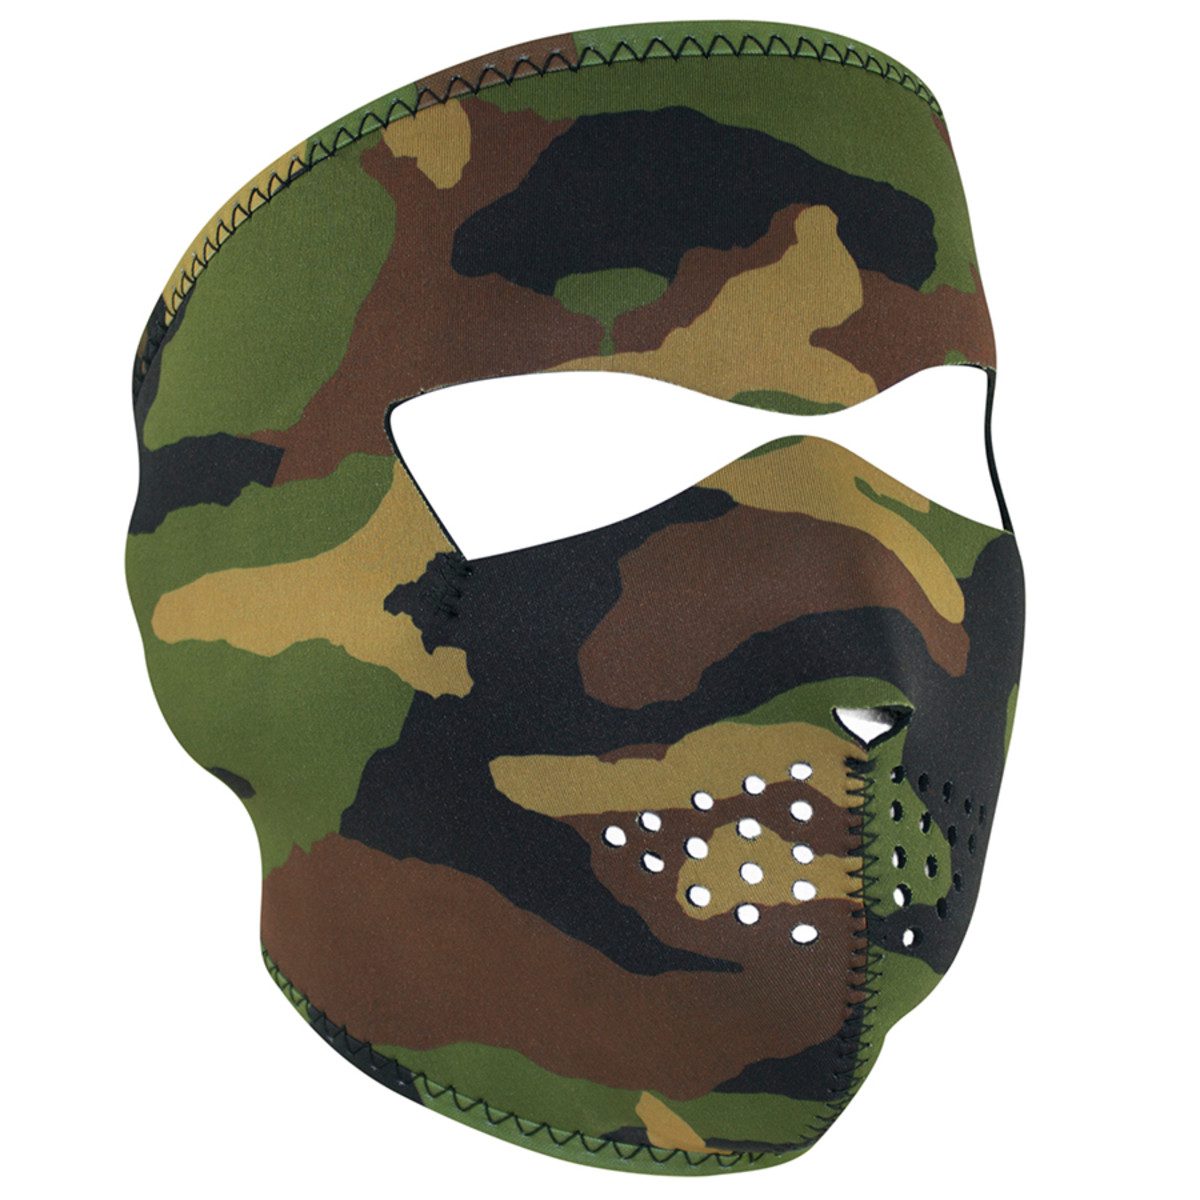 Zan Headgear Neoprene Full Face Mask - Woodland Camo